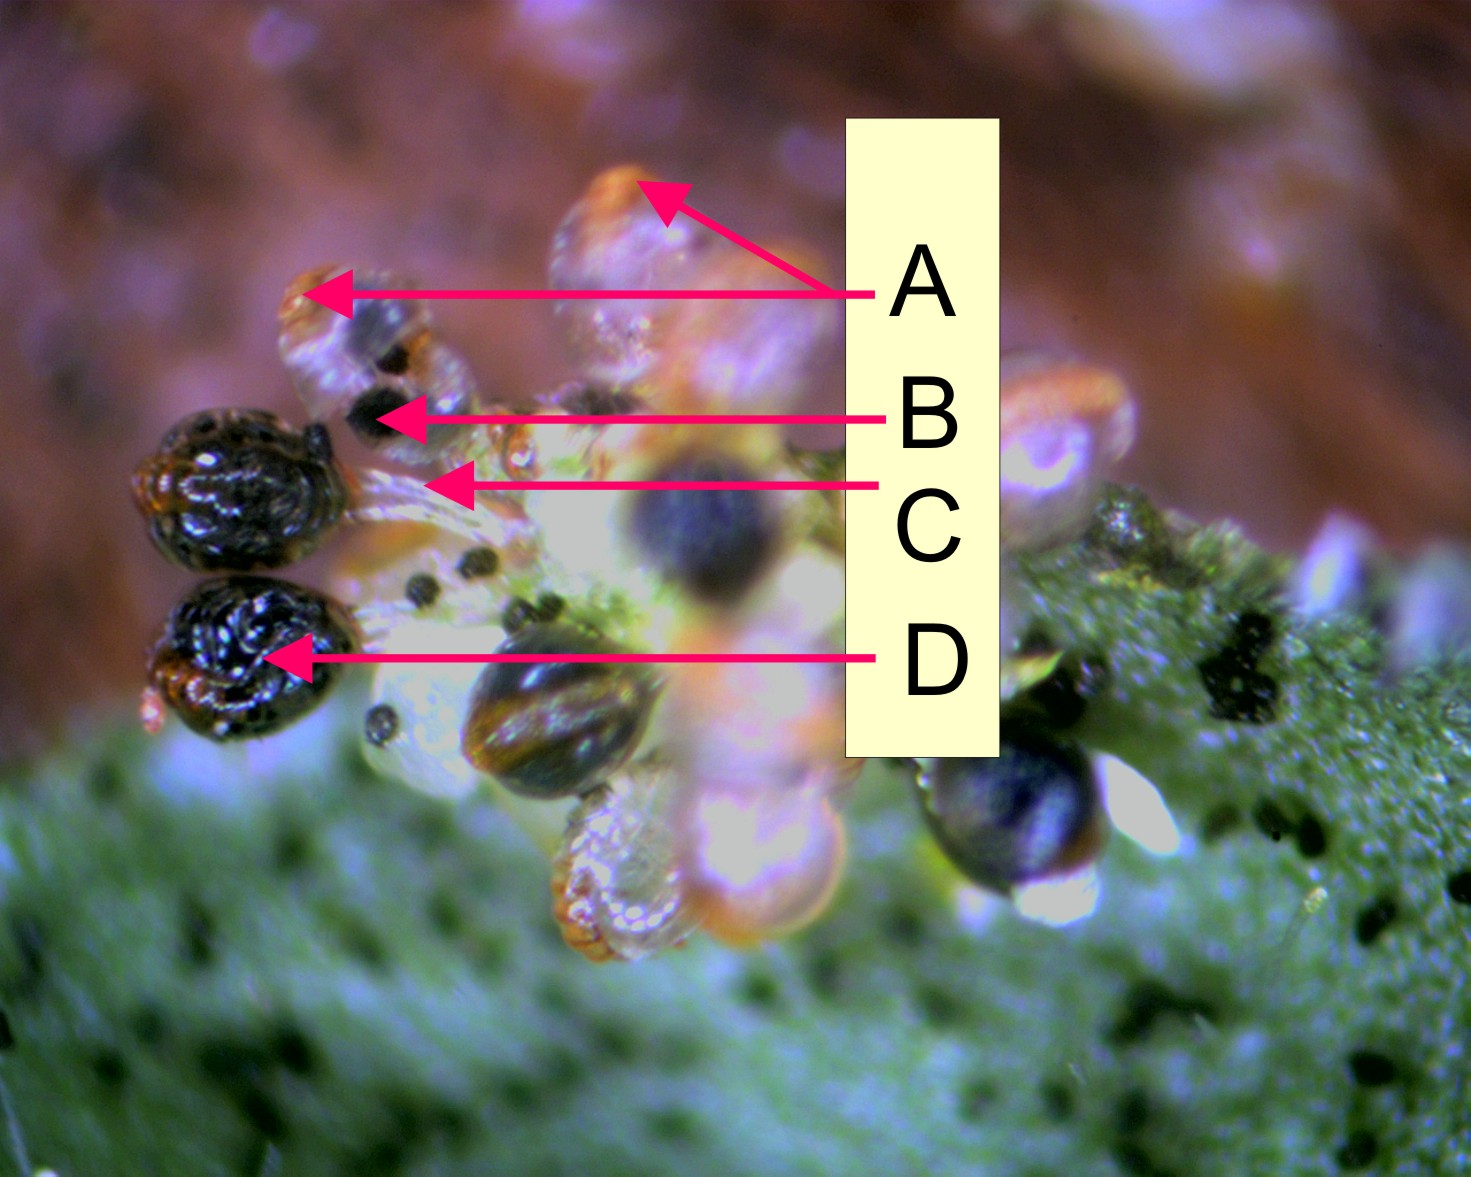 蕨叶横切面示孢子囊群图片